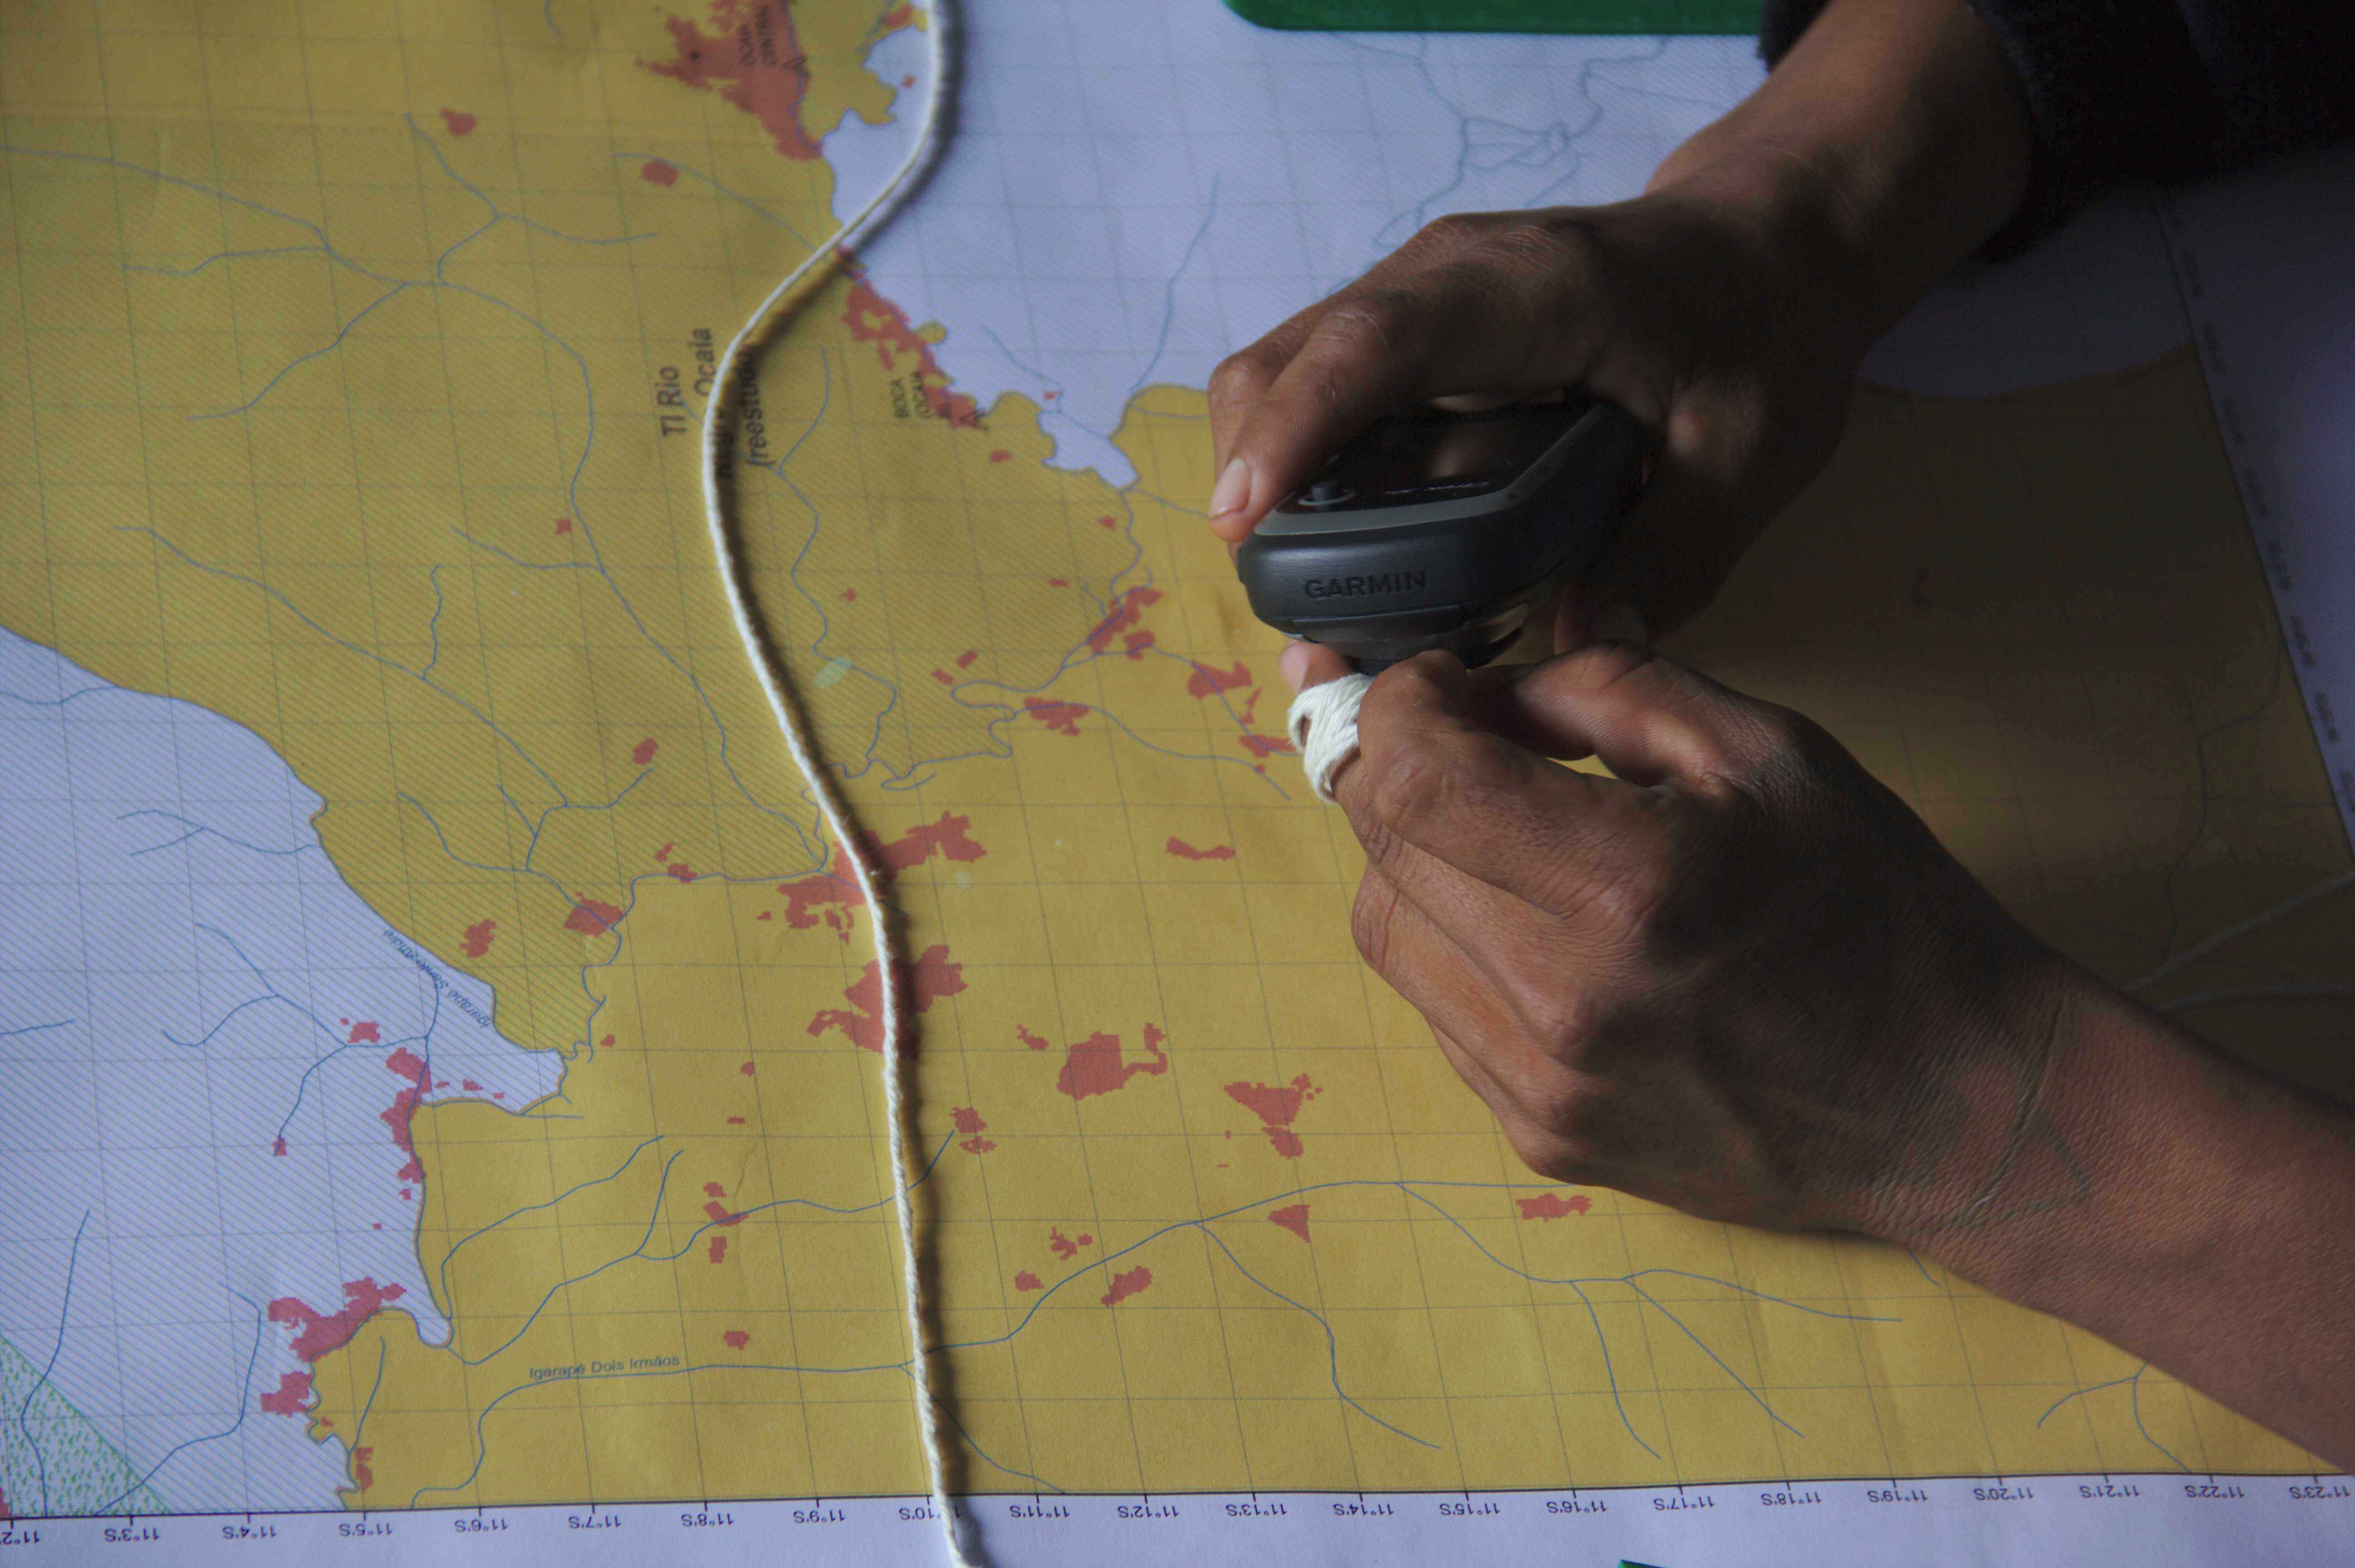 Oficina de mapeamento participativo com pesquisadores indígenas | Imagem: Tiago Moreira dos Santos